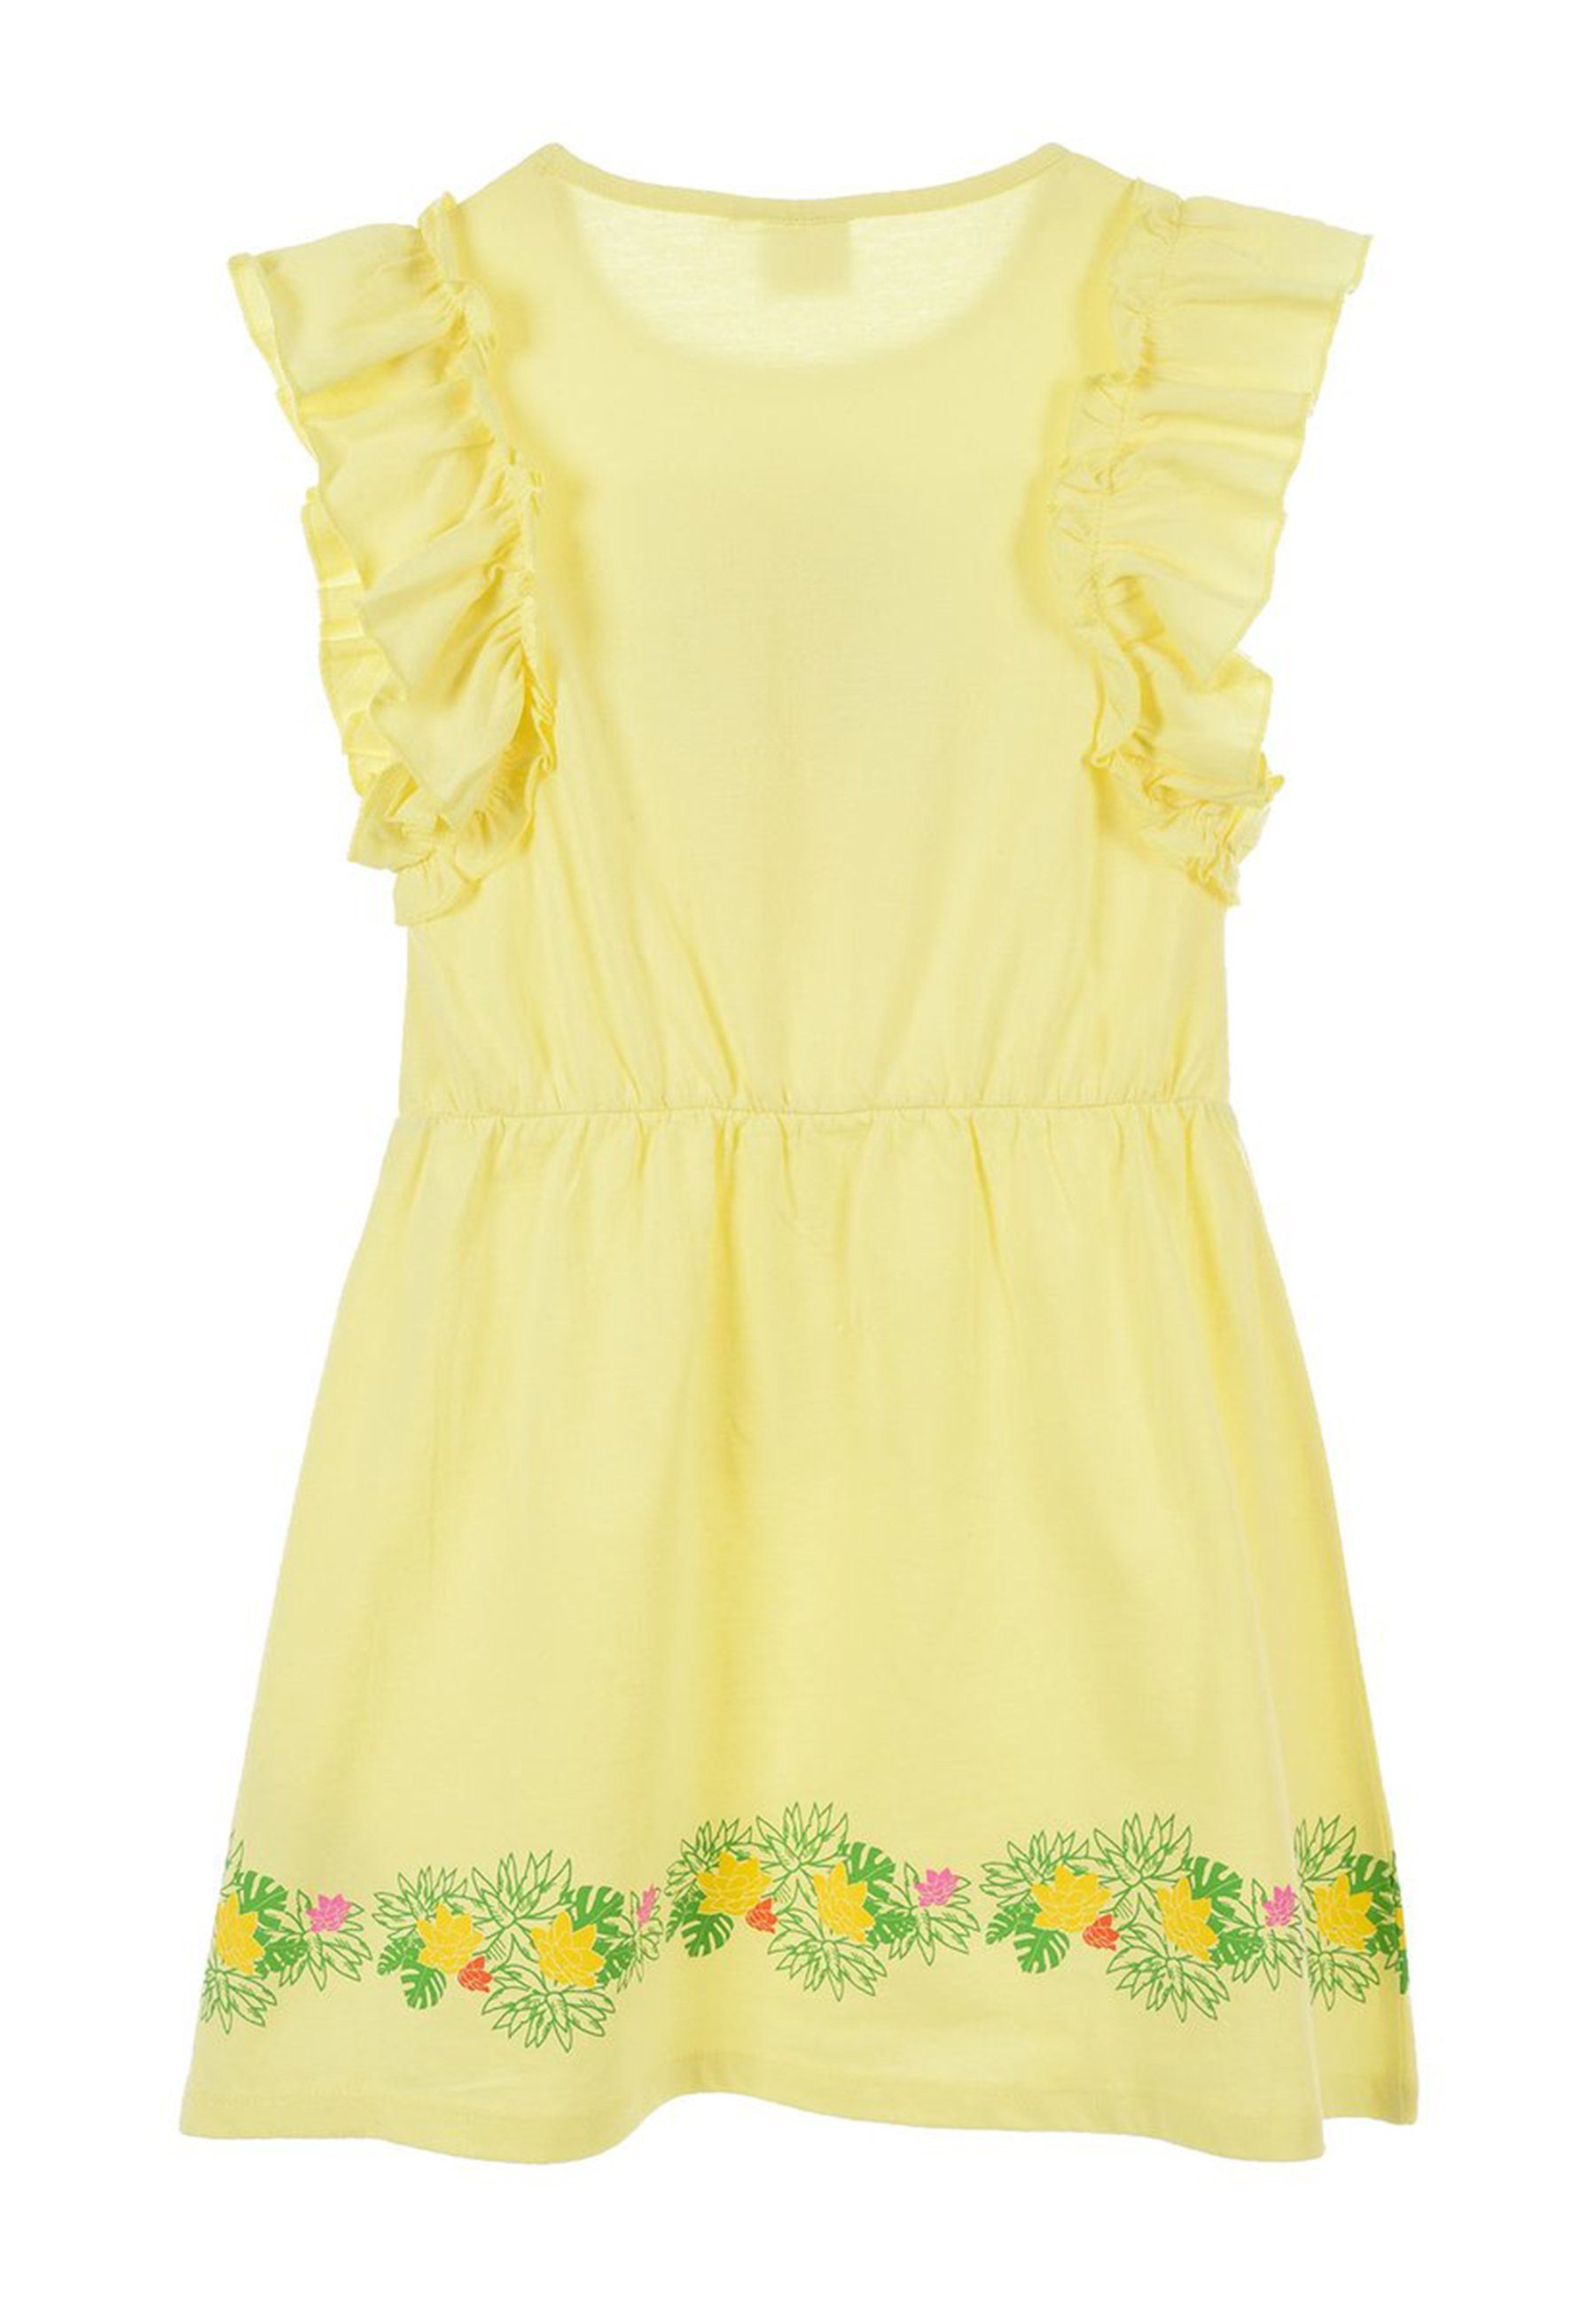 L.O.L. SURPRISE! A-Linien-Kleid Mädchen Sommer-Kleid Tüll Kinder Party-Kleid Gelb